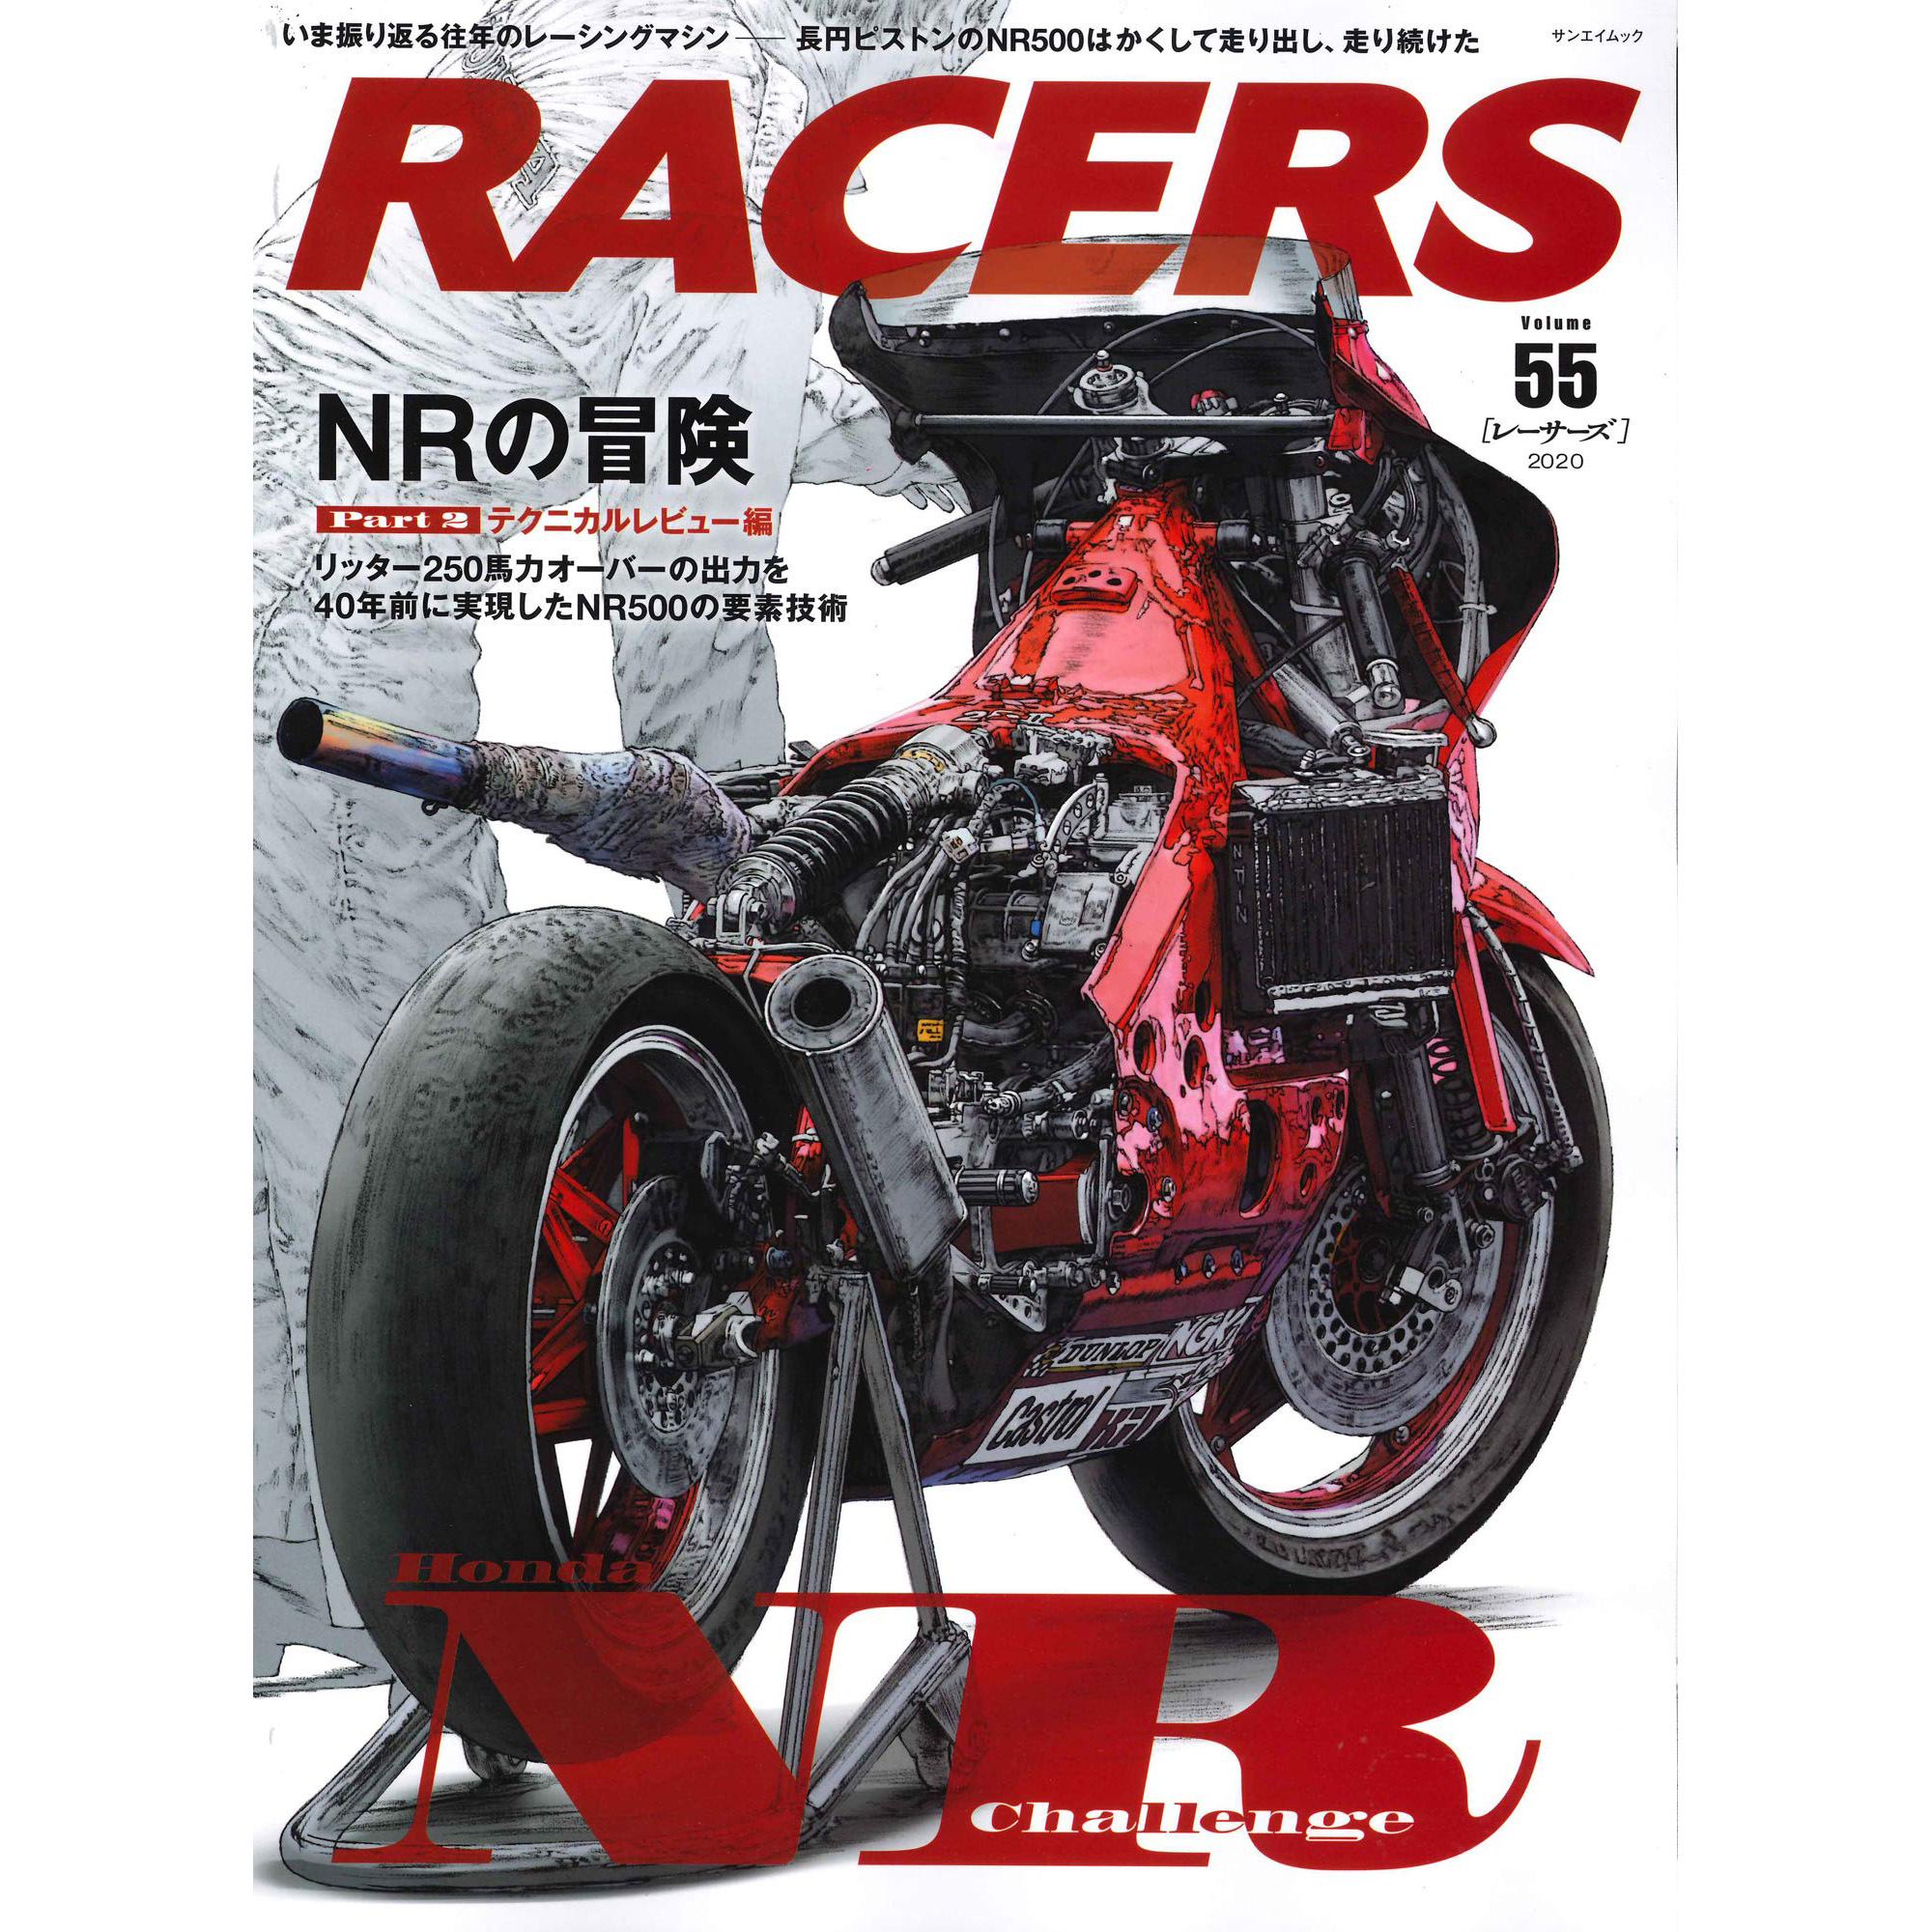 现货RACERS レーサーズ Vol.55 ホンダ NR500 Part.2本田摩托车书